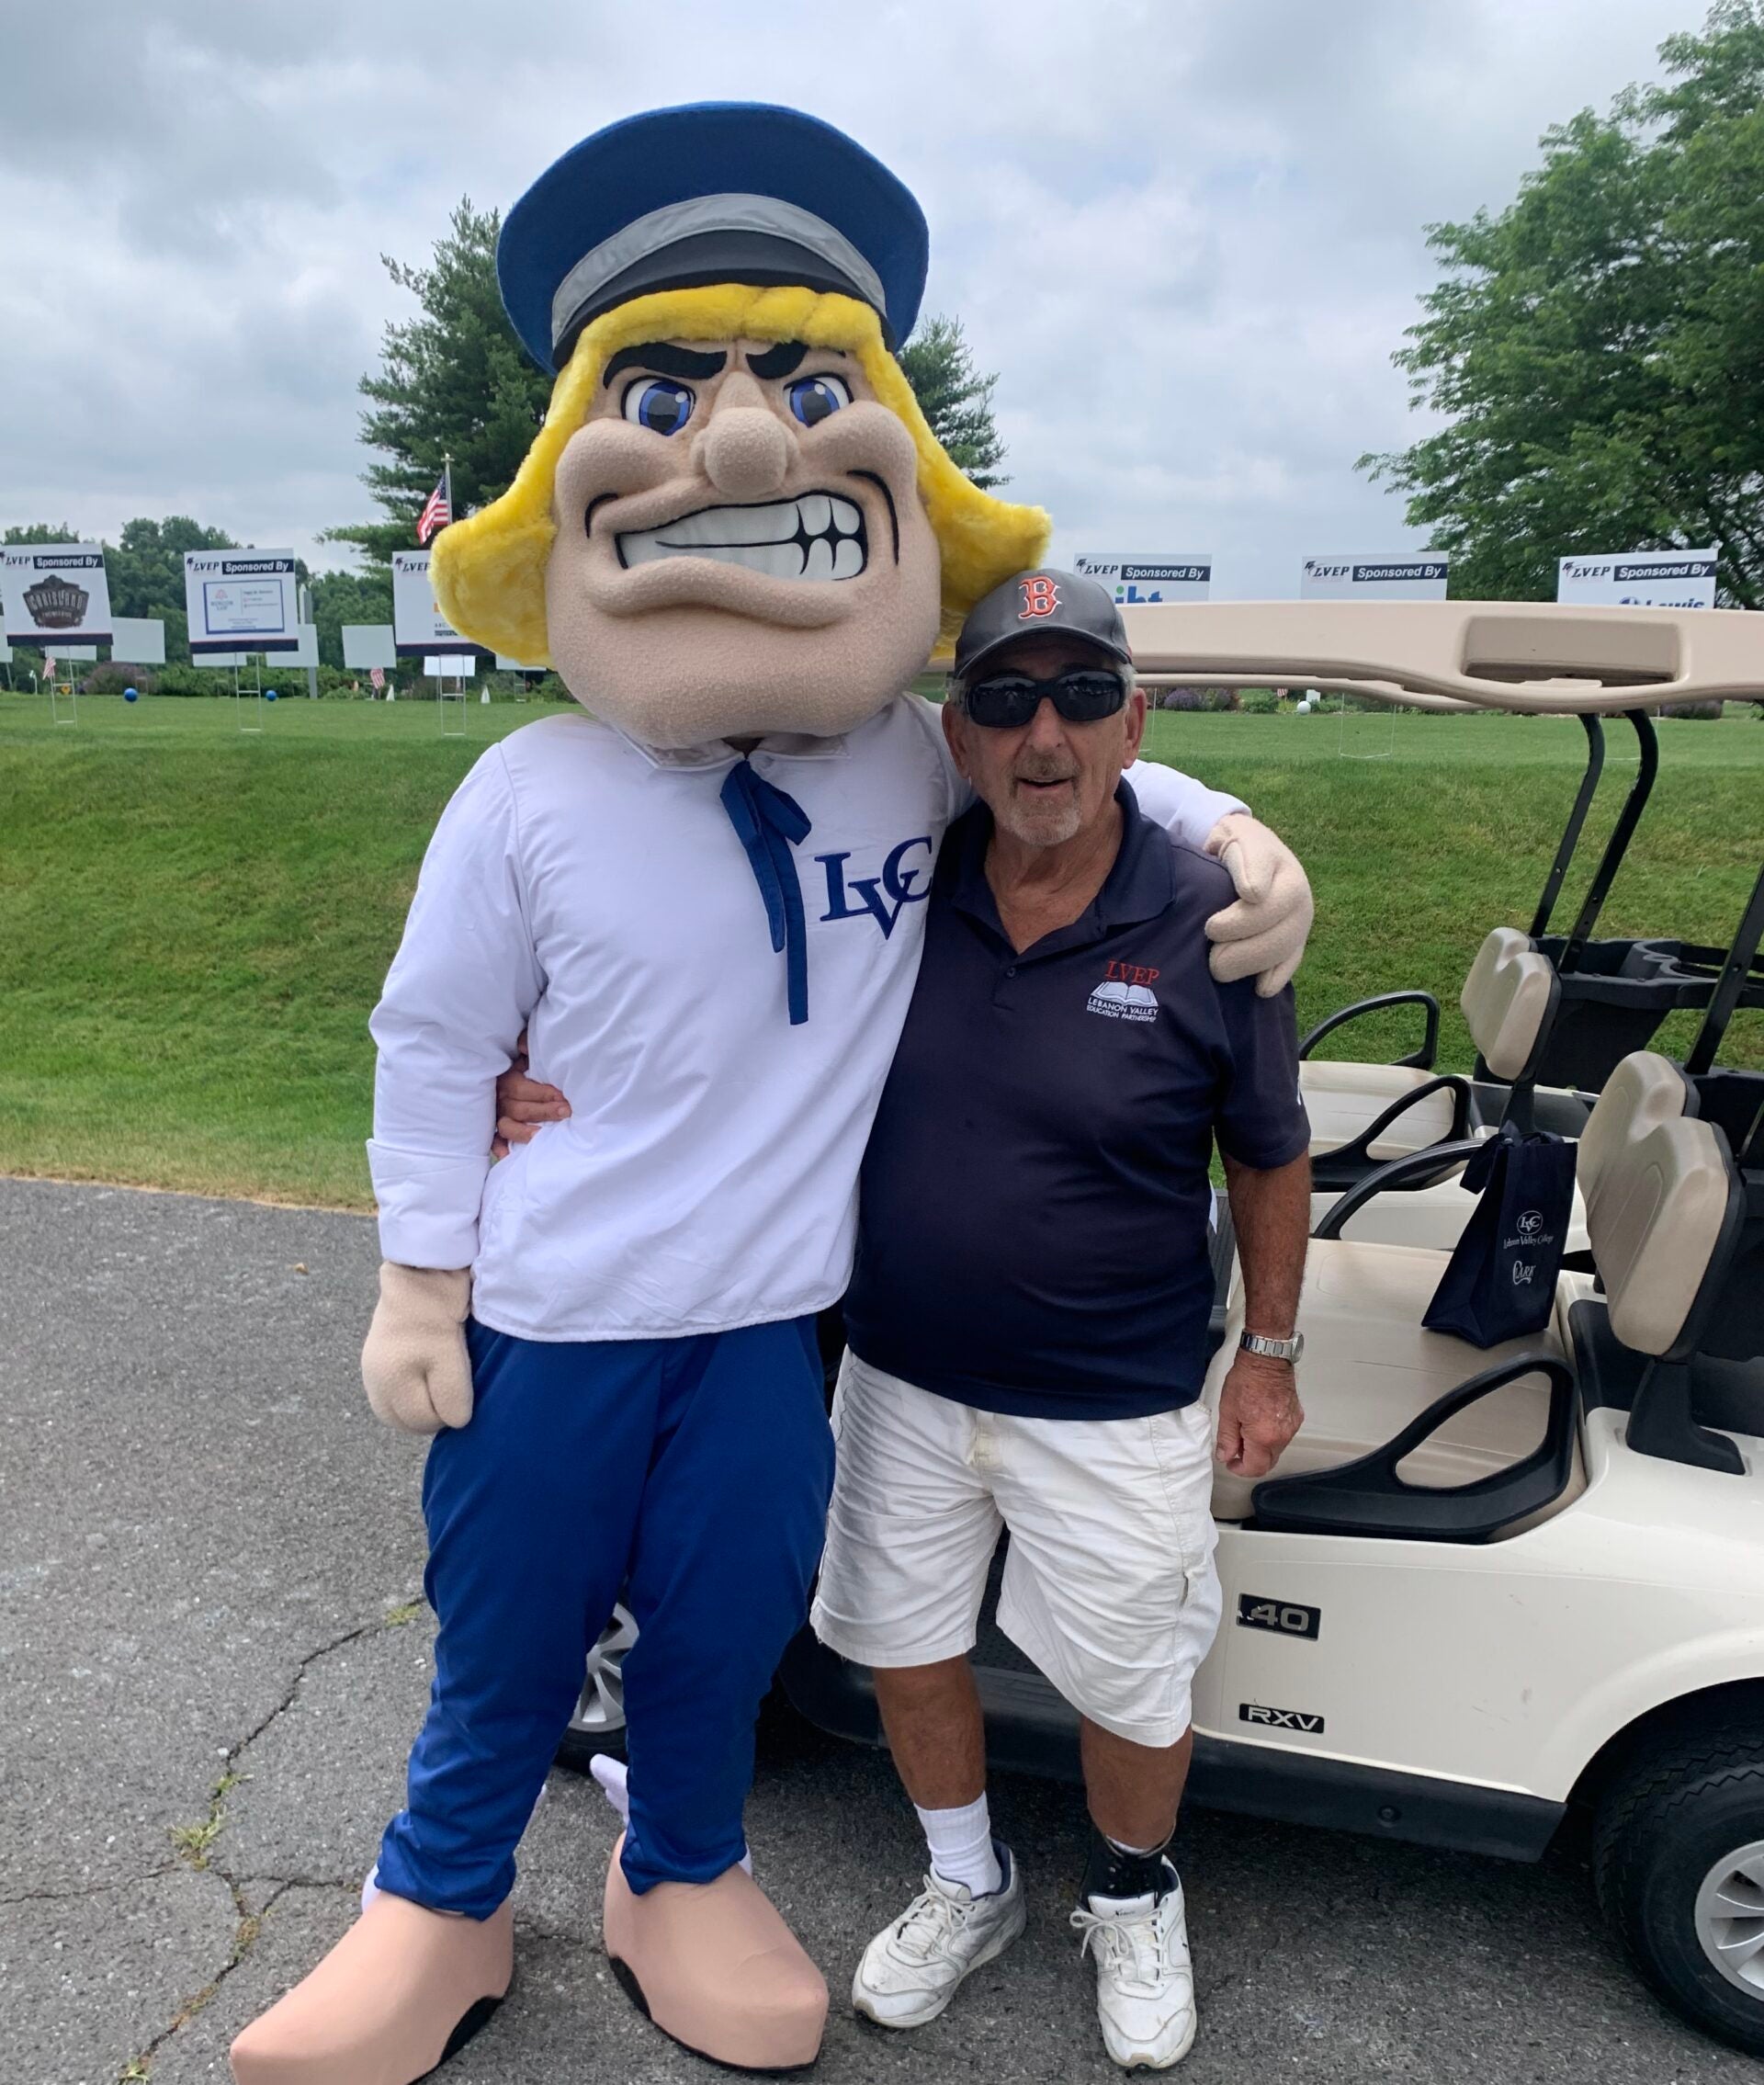 LVEP golf tournament participant with Dutchman mascot